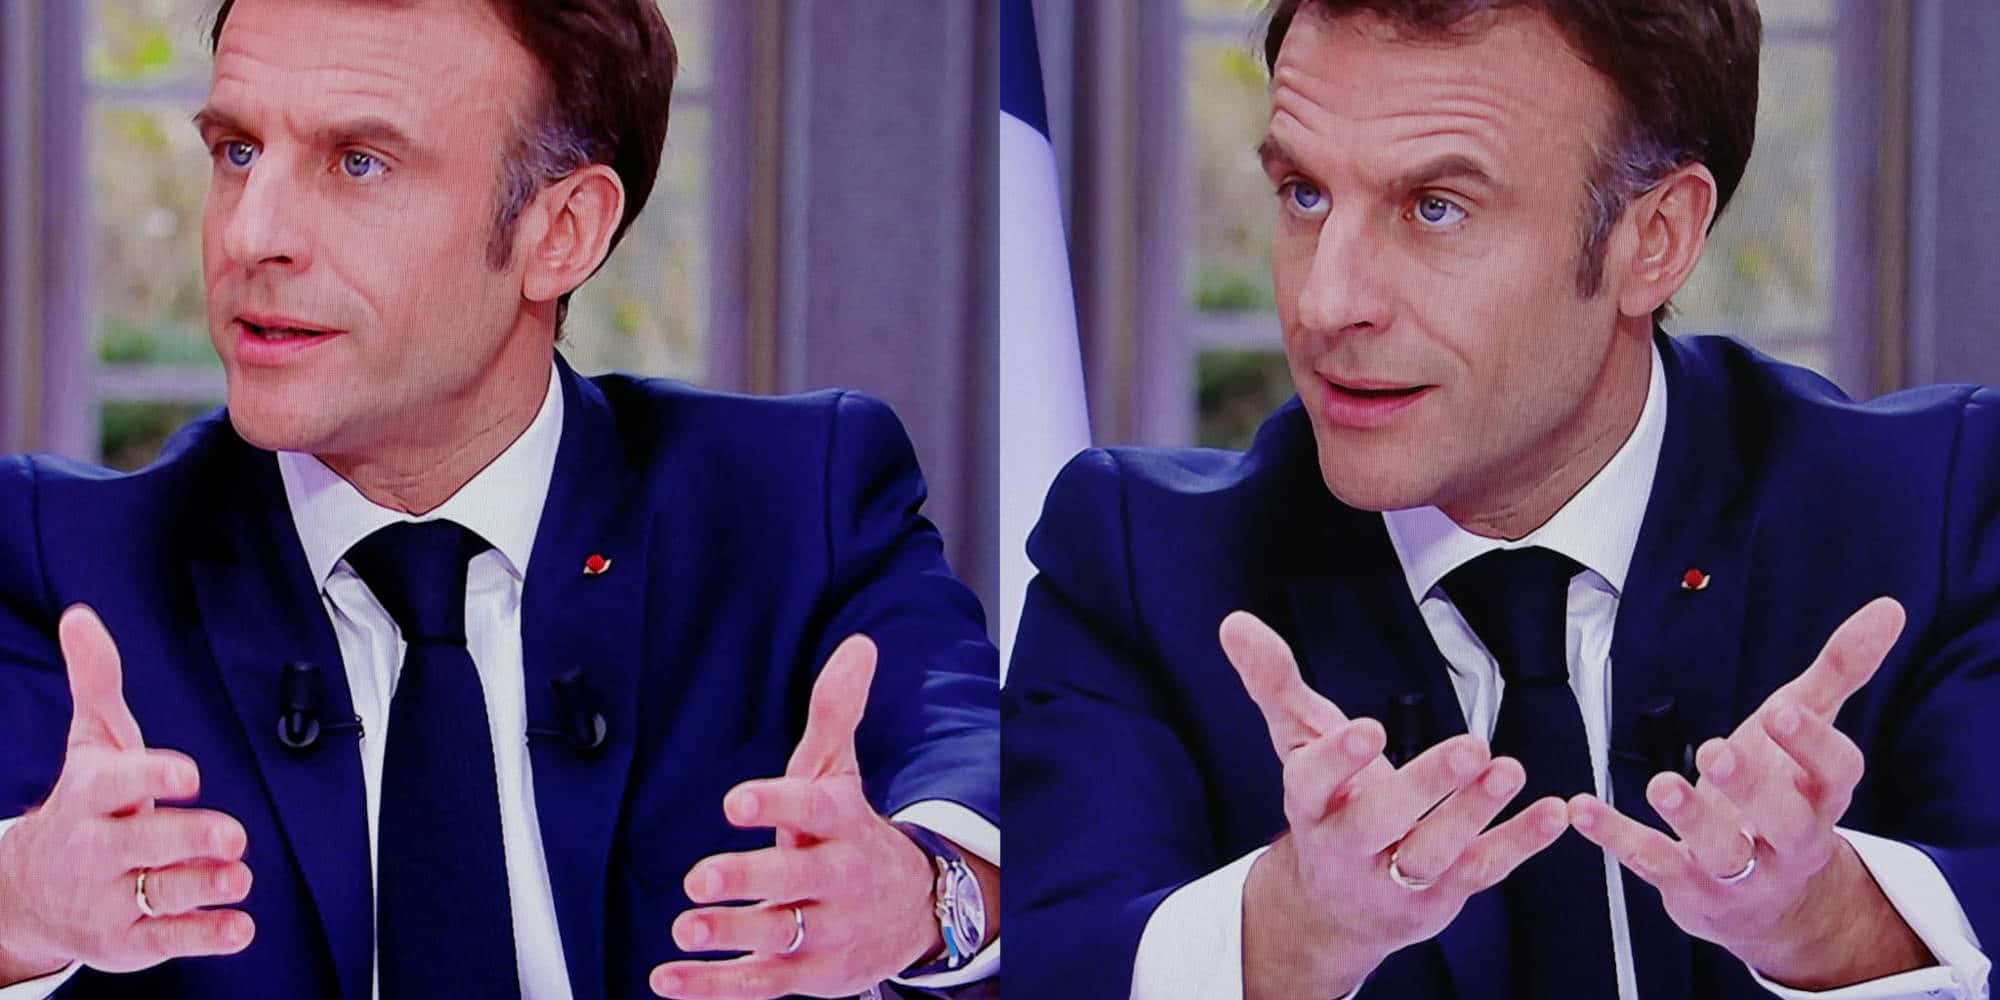 Ο Γάλλος πρόεδρος Εμανουέλ Μακρόν με και χωρίς το ρολόι